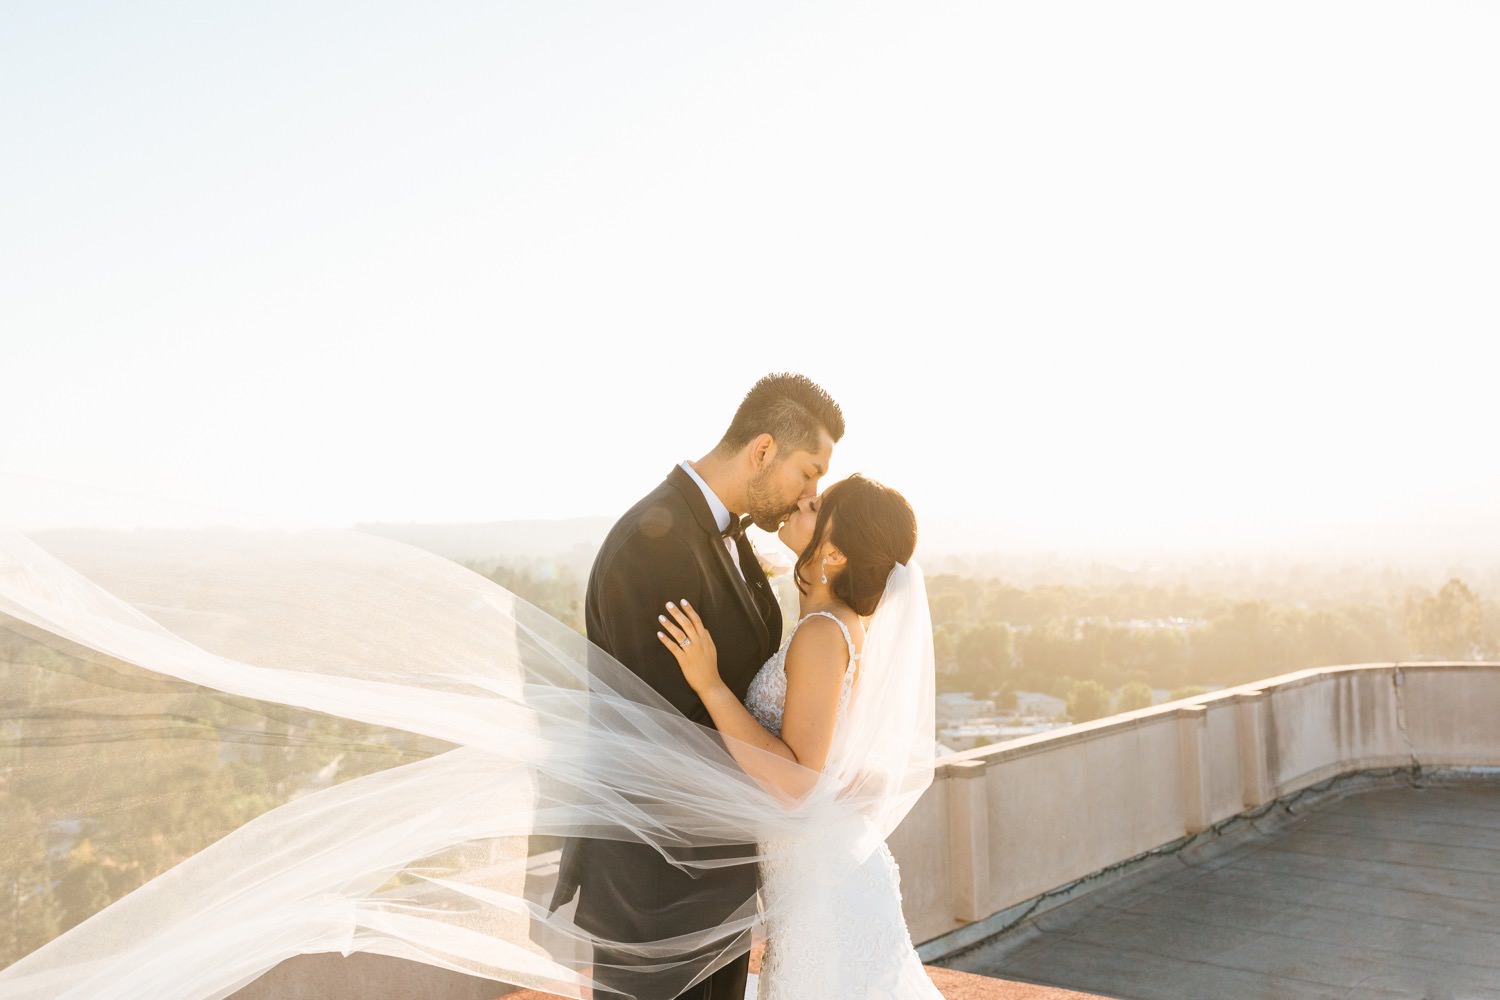 LA rooftop wedding photos - romantic bride and groom photos - veil wedding photos - https://brittneyhannonphotography.com